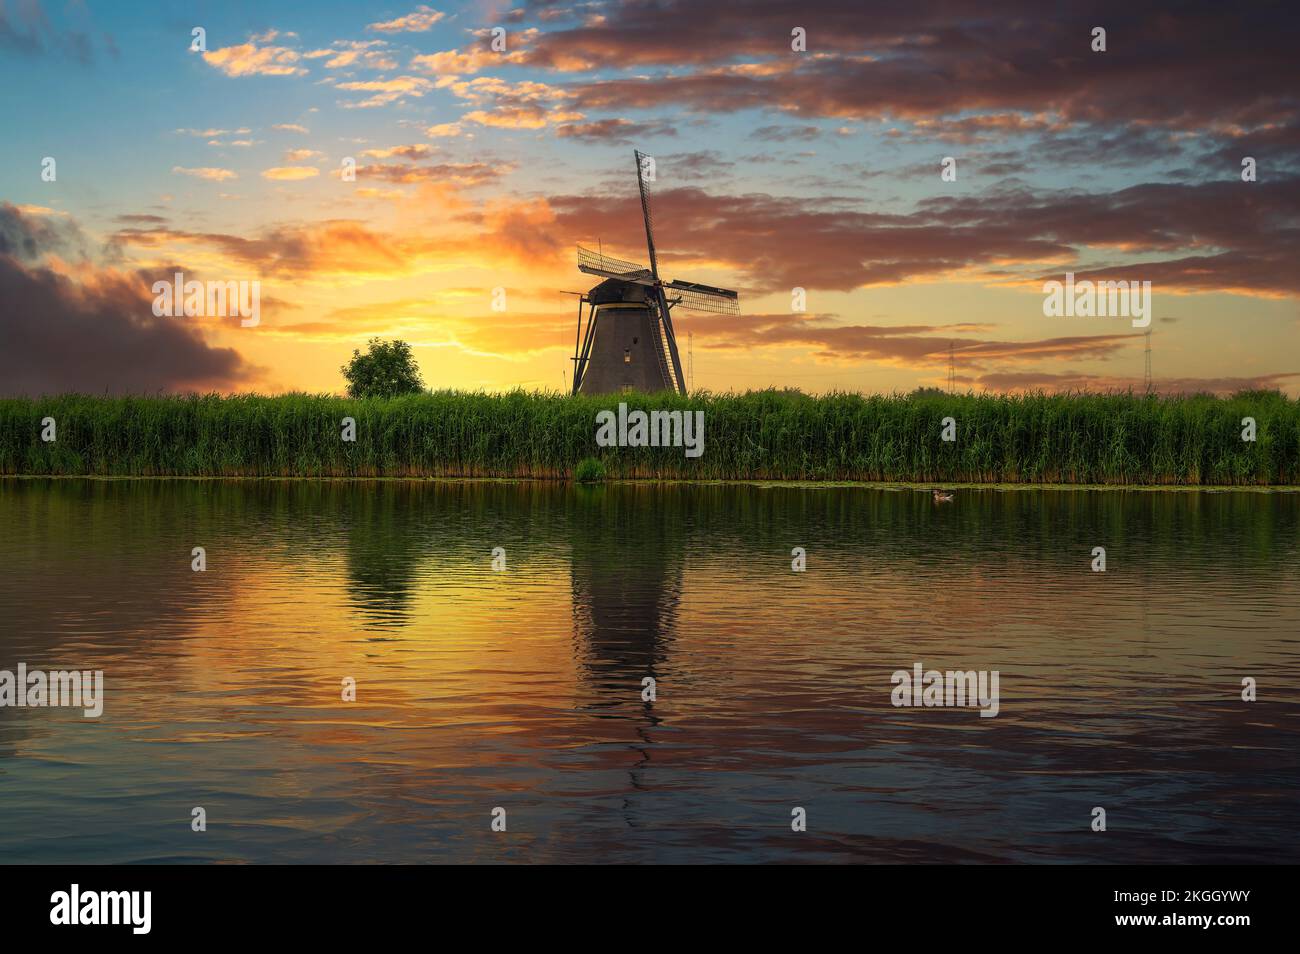 Coucher de soleil sur un ancien moulin à vent hollandais au bord d'une rivière à Kinderdijk, pays-Bas Banque D'Images